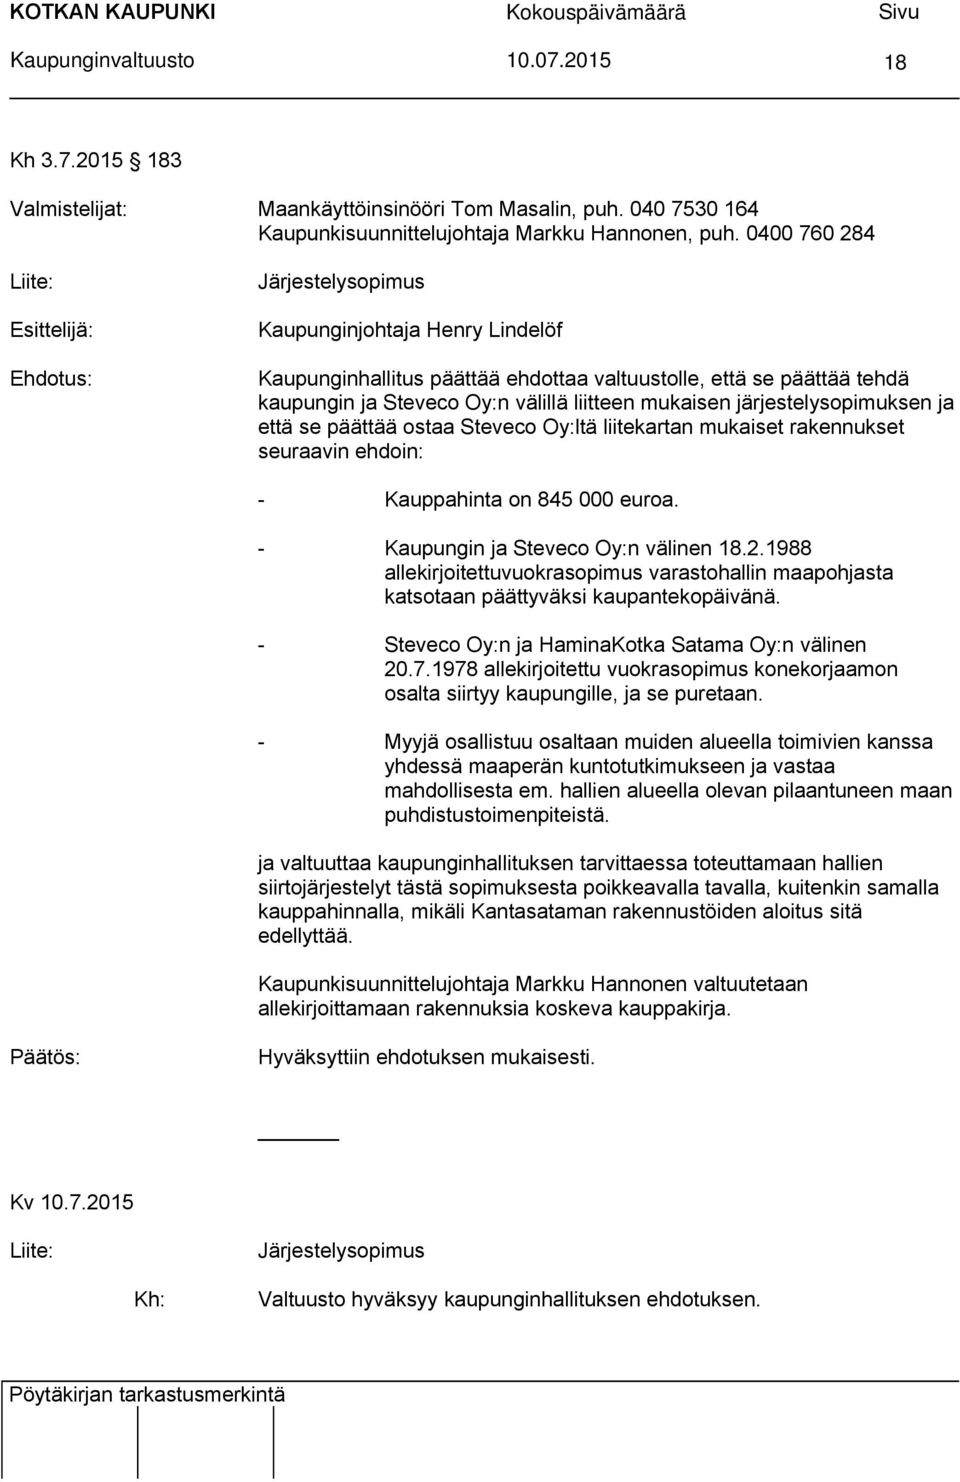 0400 760 284 Liite: Esittelijä: Ehdotus: Järjestelysopimus Kaupunginjohtaja Henry Lindelöf Kaupunginhallitus päättää ehdottaa valtuustolle, että se päättää tehdä kaupungin ja Steveco Oy:n välillä